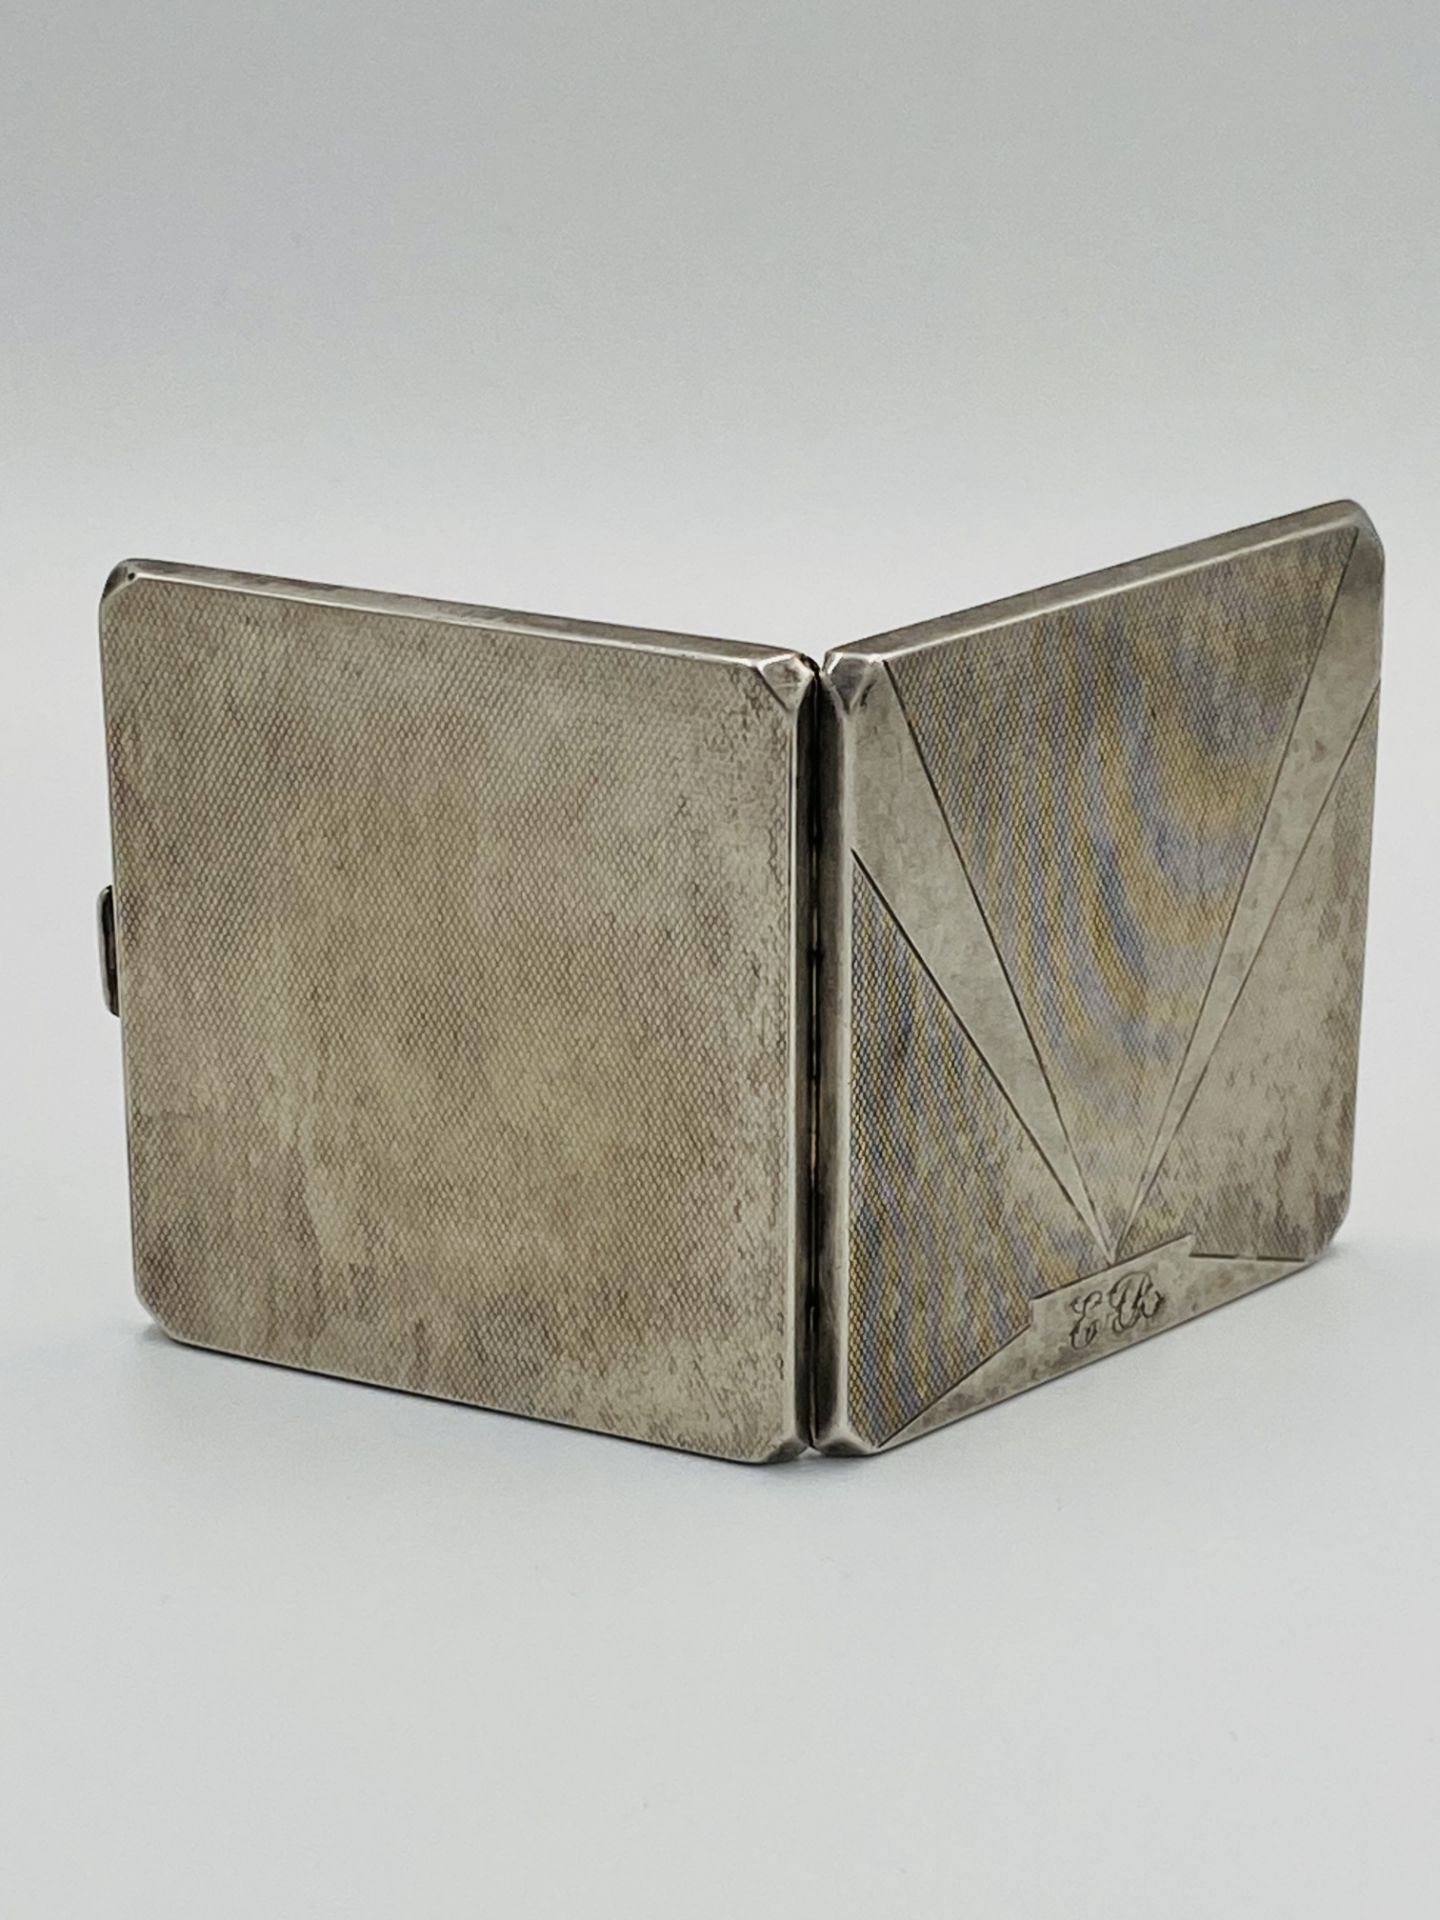 Silver cigarette case - Image 3 of 5